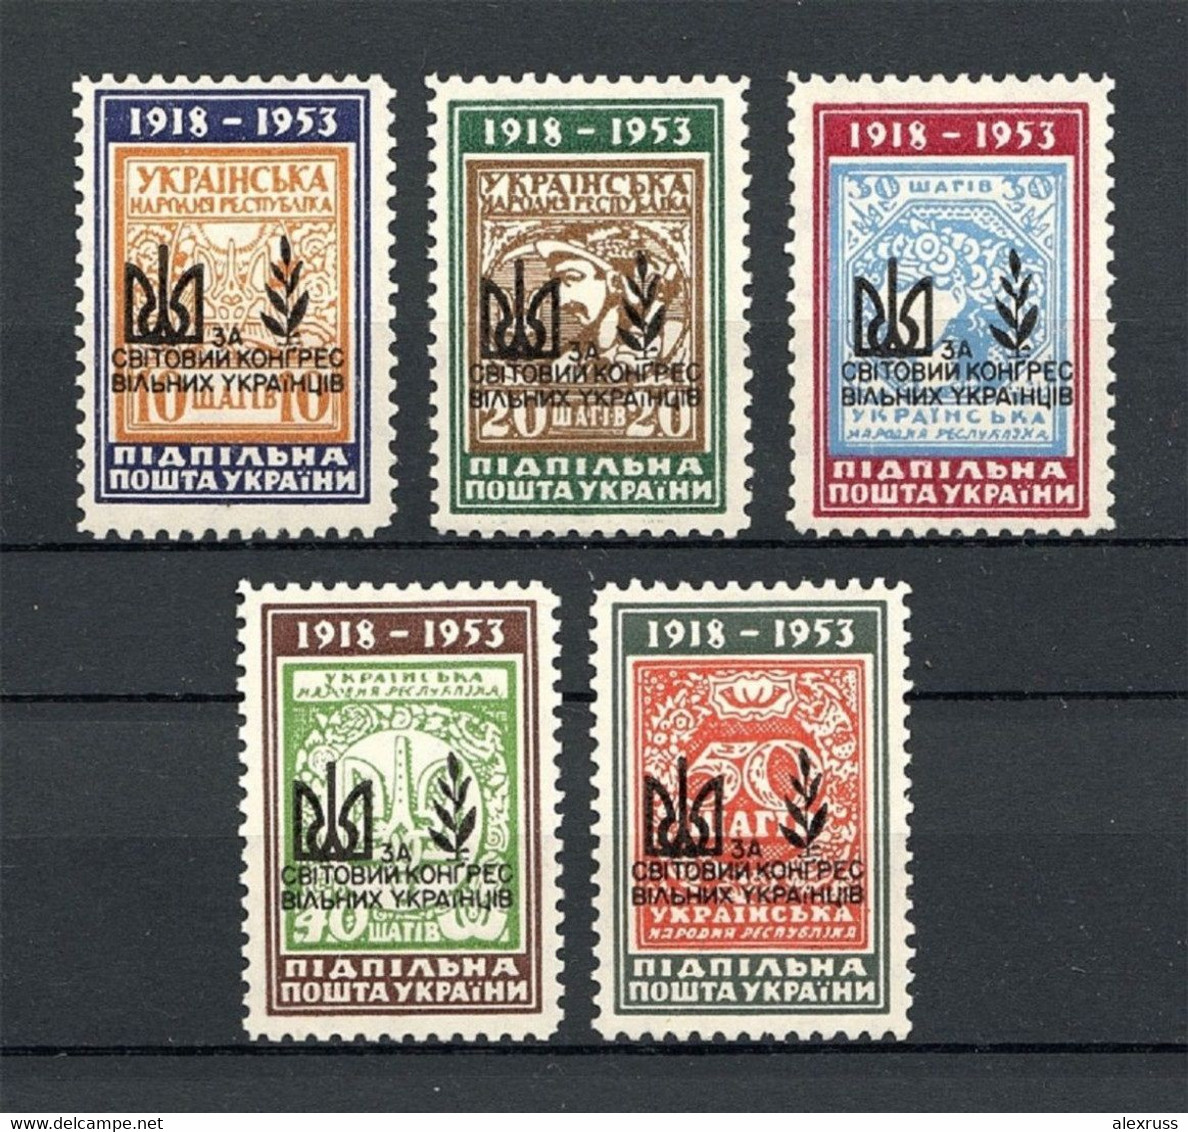 Ukraine 1959 Ukrainian World Congress, Underground Post, Only 720 Issued, Full Set,VF MNH** - Ucraina & Ucraina Occidentale